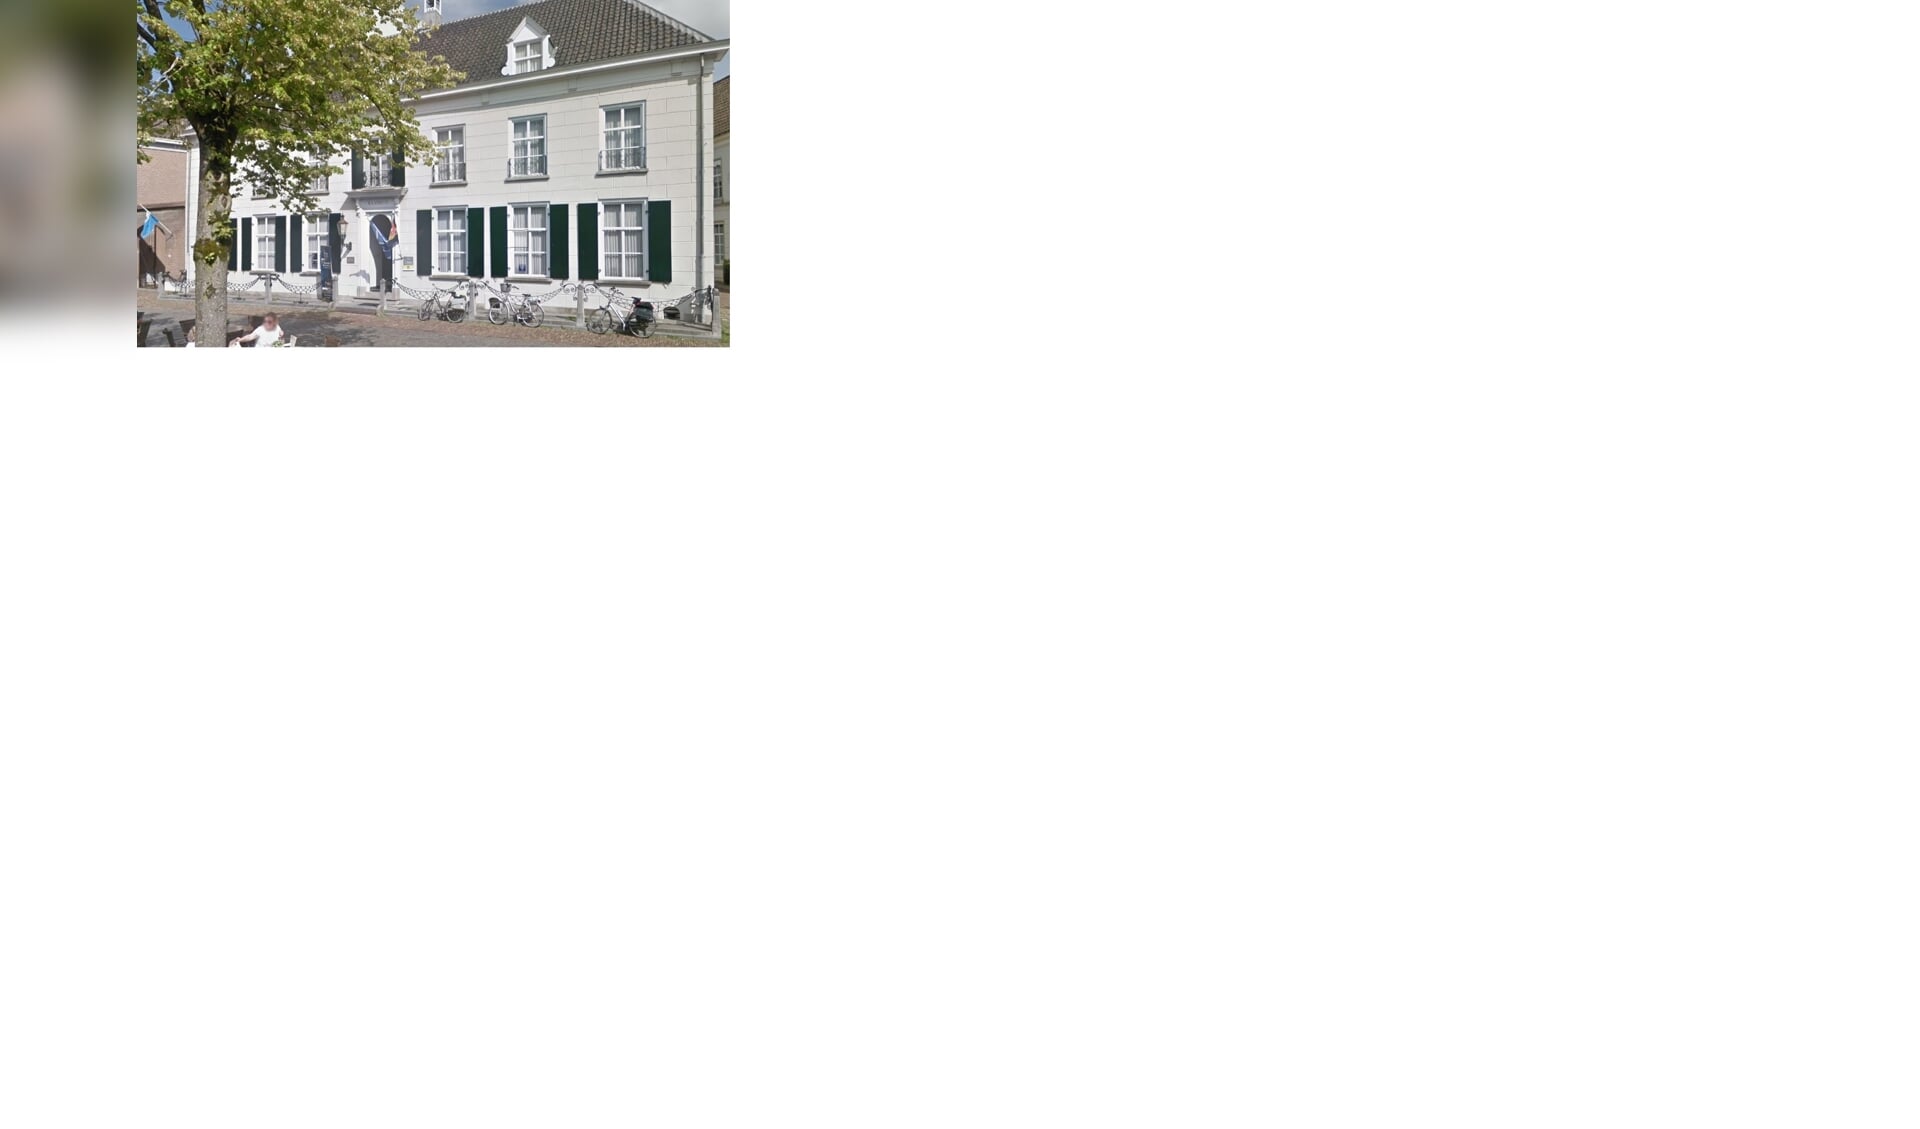 Het voormalige Raadhuis in Ravenstein. (Foto: Google Maps)